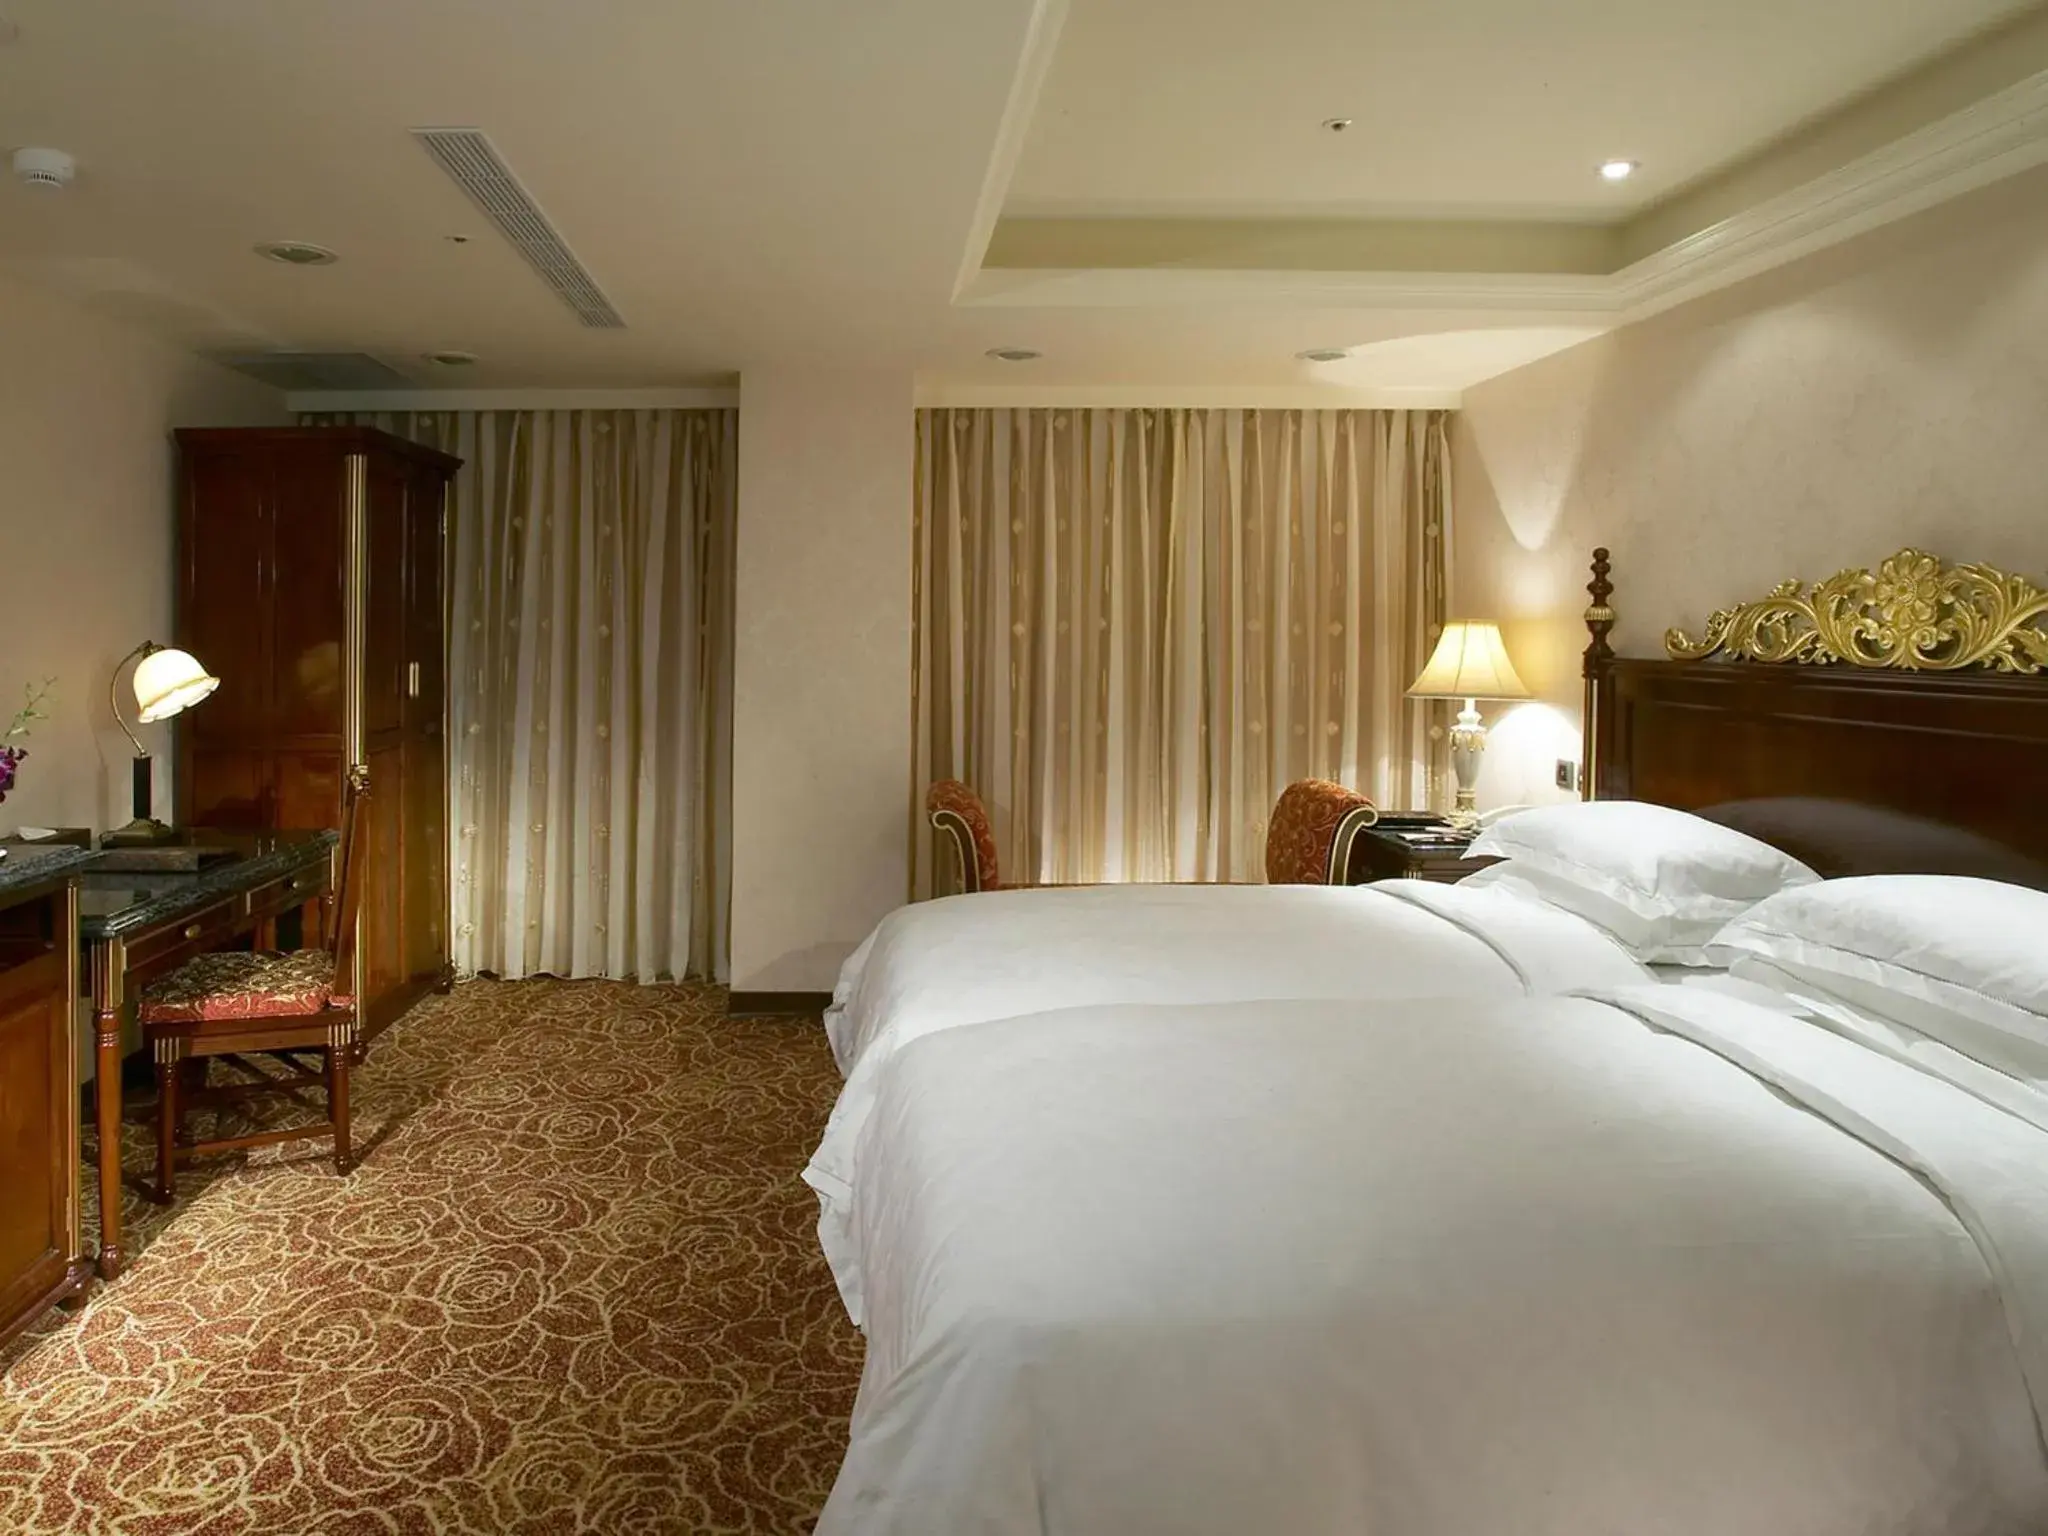 Executive Twin Room in Royal Seasons Hotel Taipei-Nanjing W